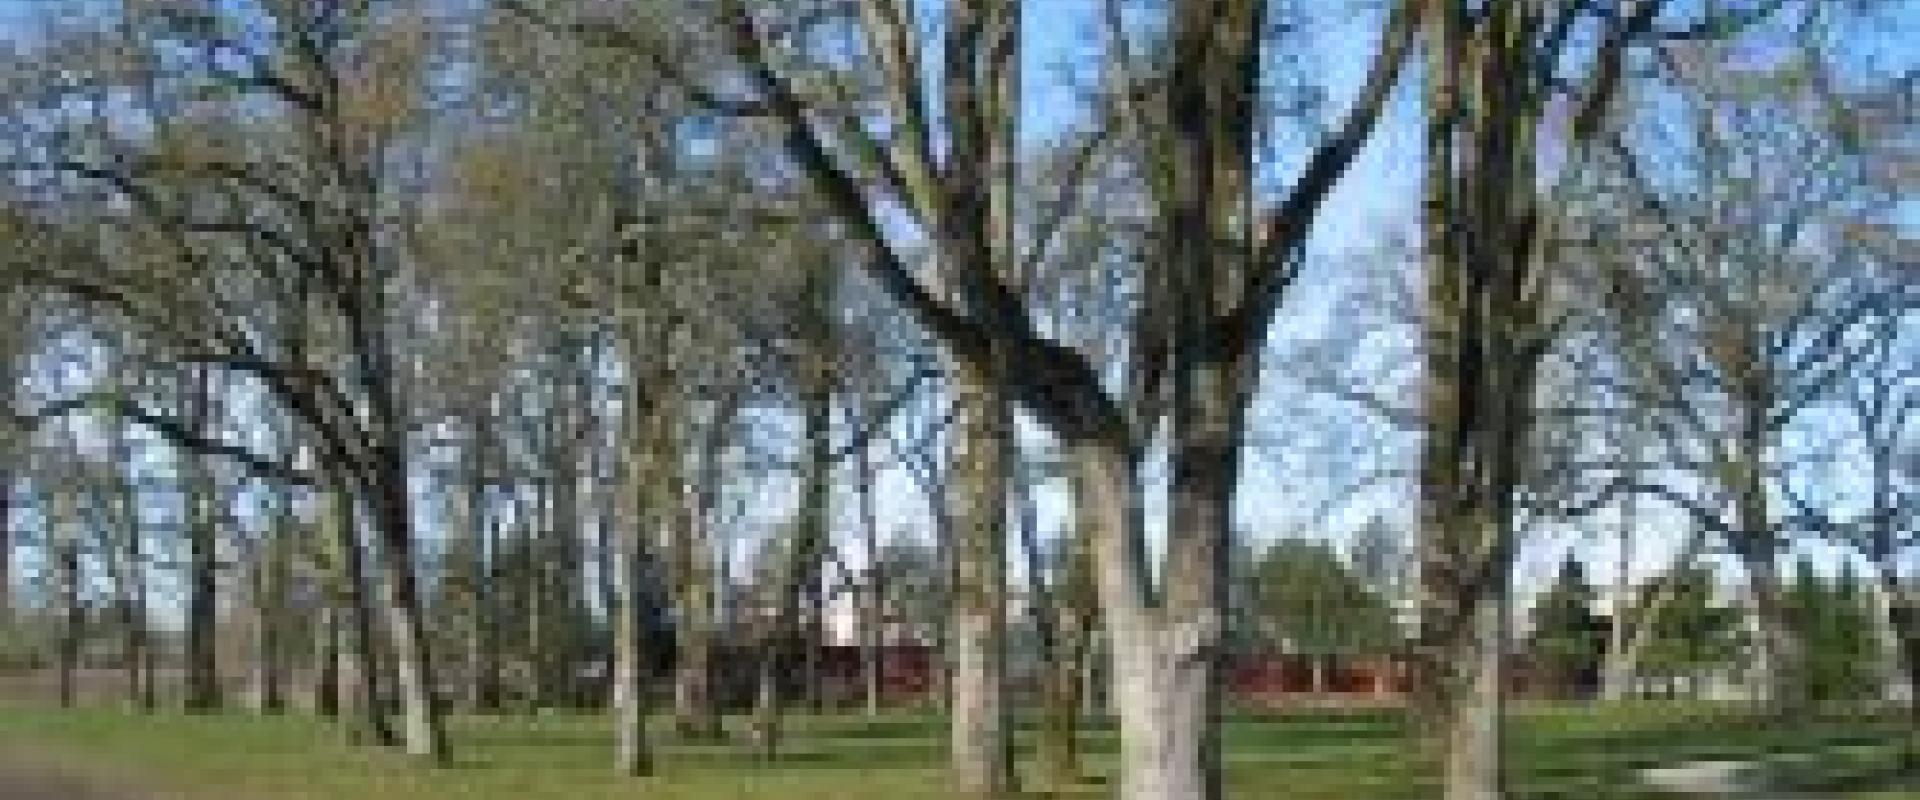 white oak park